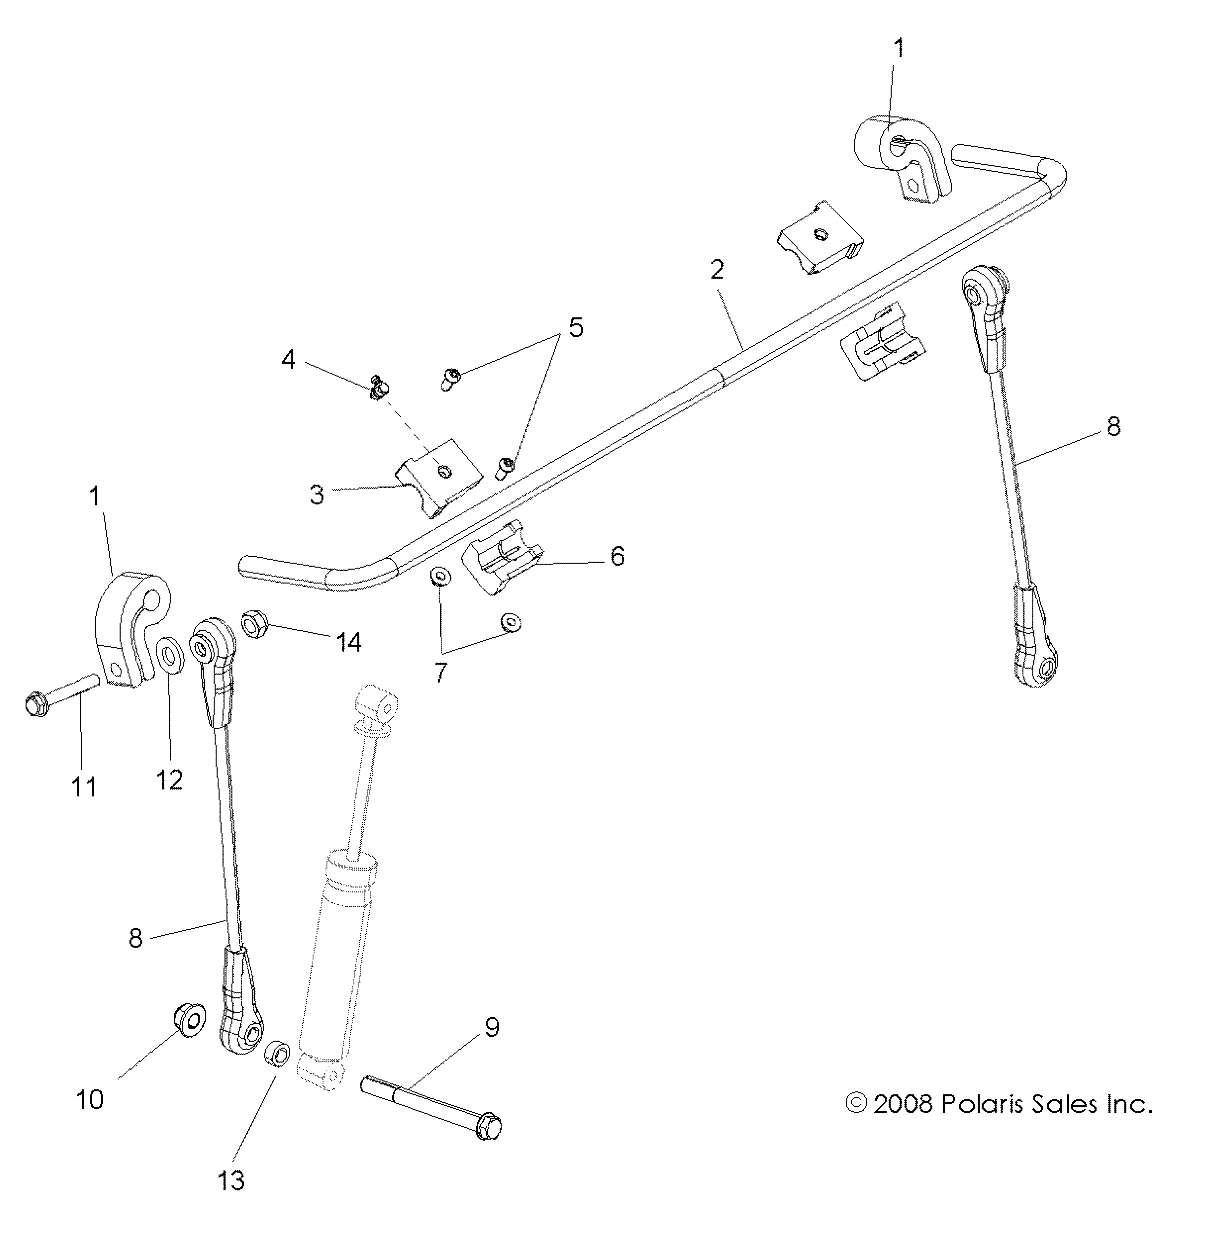 Foto diagrama Polaris que contem a peça 5334947-329